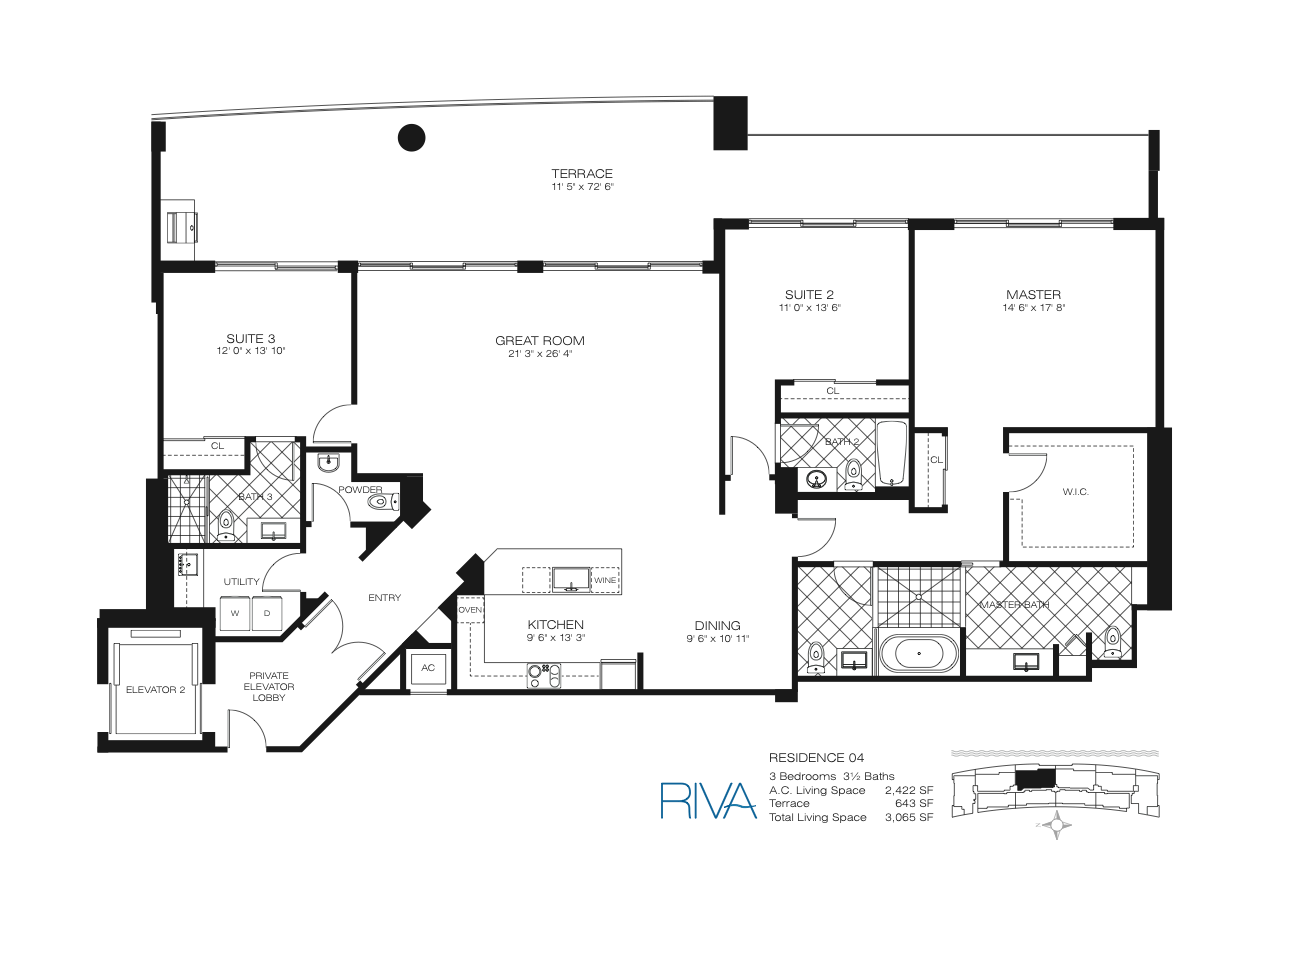 Floor Plan for Riva Fort Lauderdale Floorplans, Residence 04